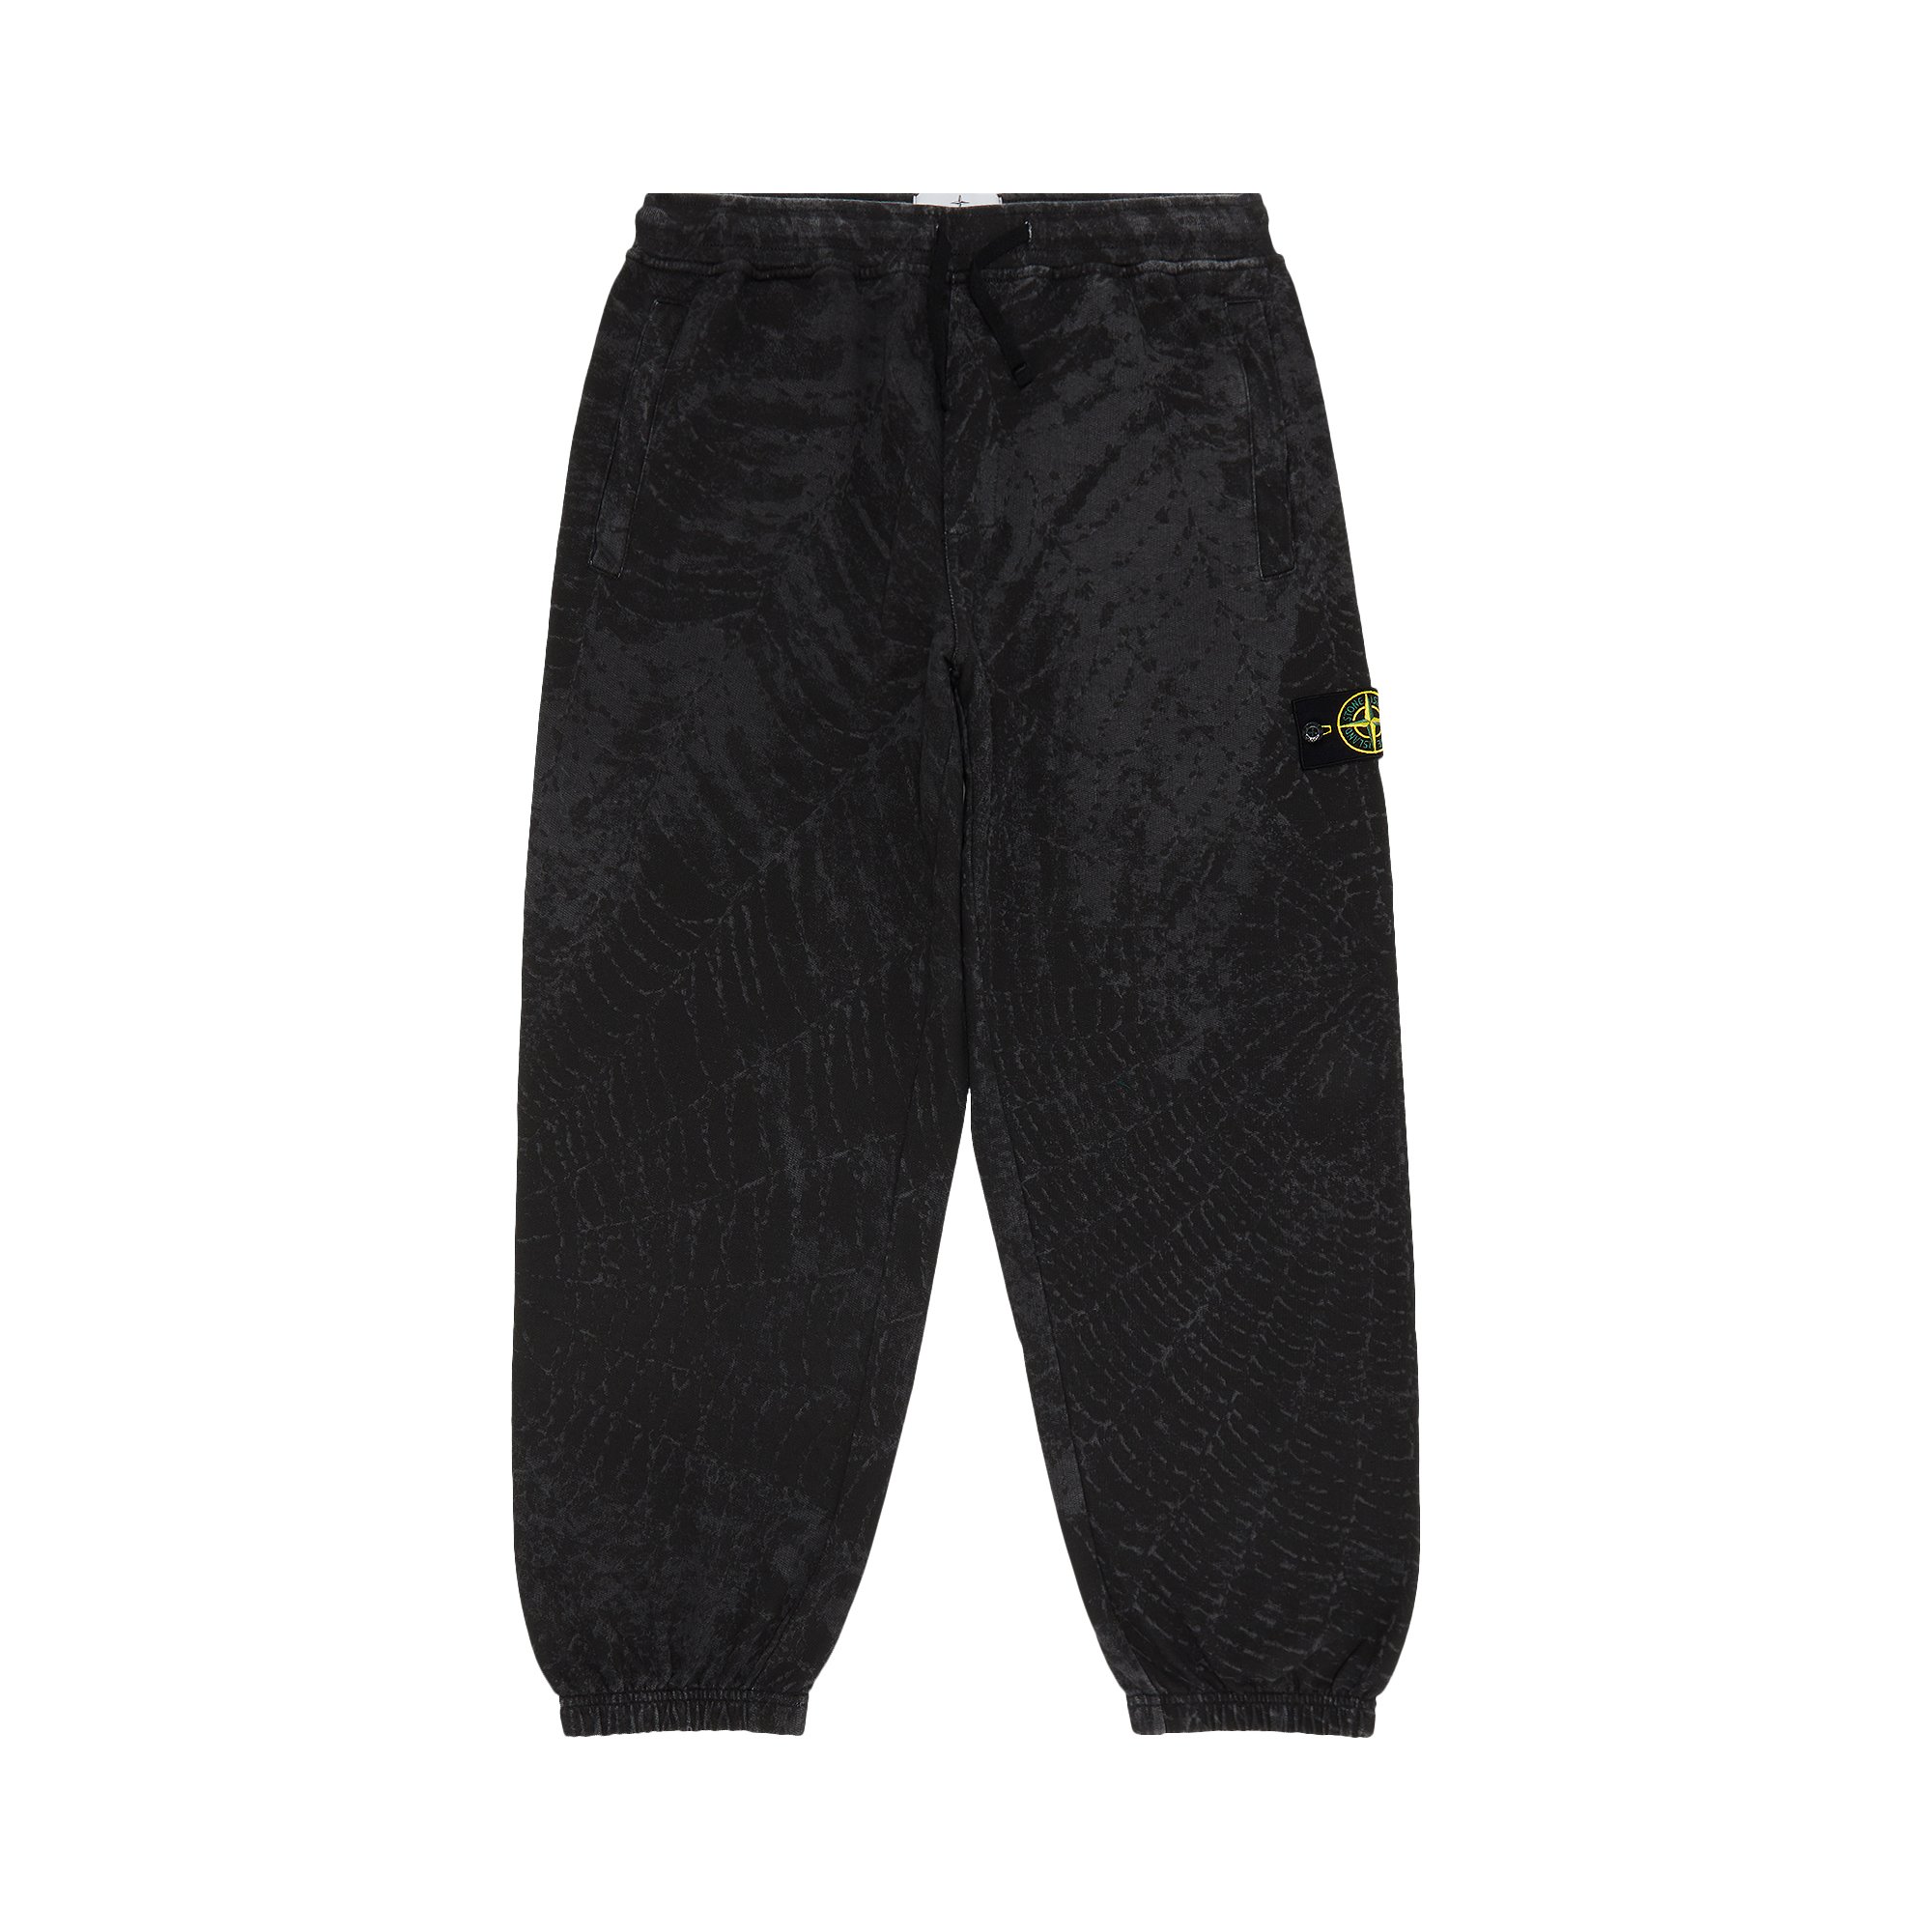 Спортивные штаны Supreme x Stone Island, черные детские серые спортивные штаны с нашивками stone island junior